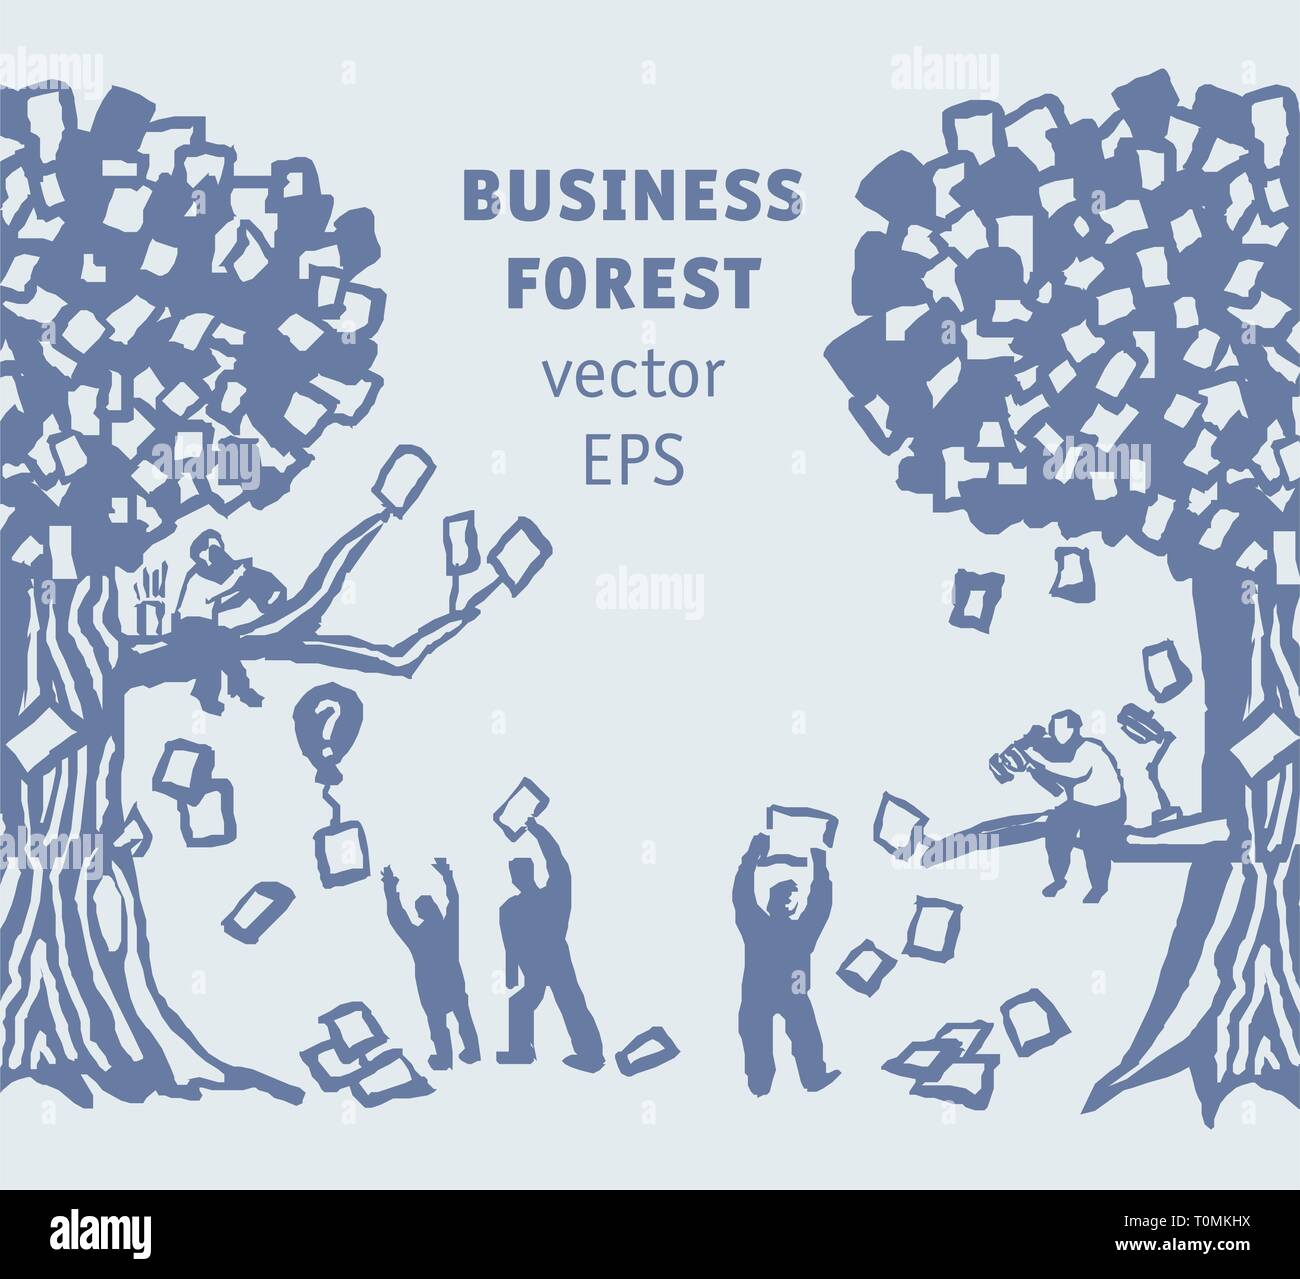 Abstract business popolo della foresta e dei documenti Illustrazione Vettoriale